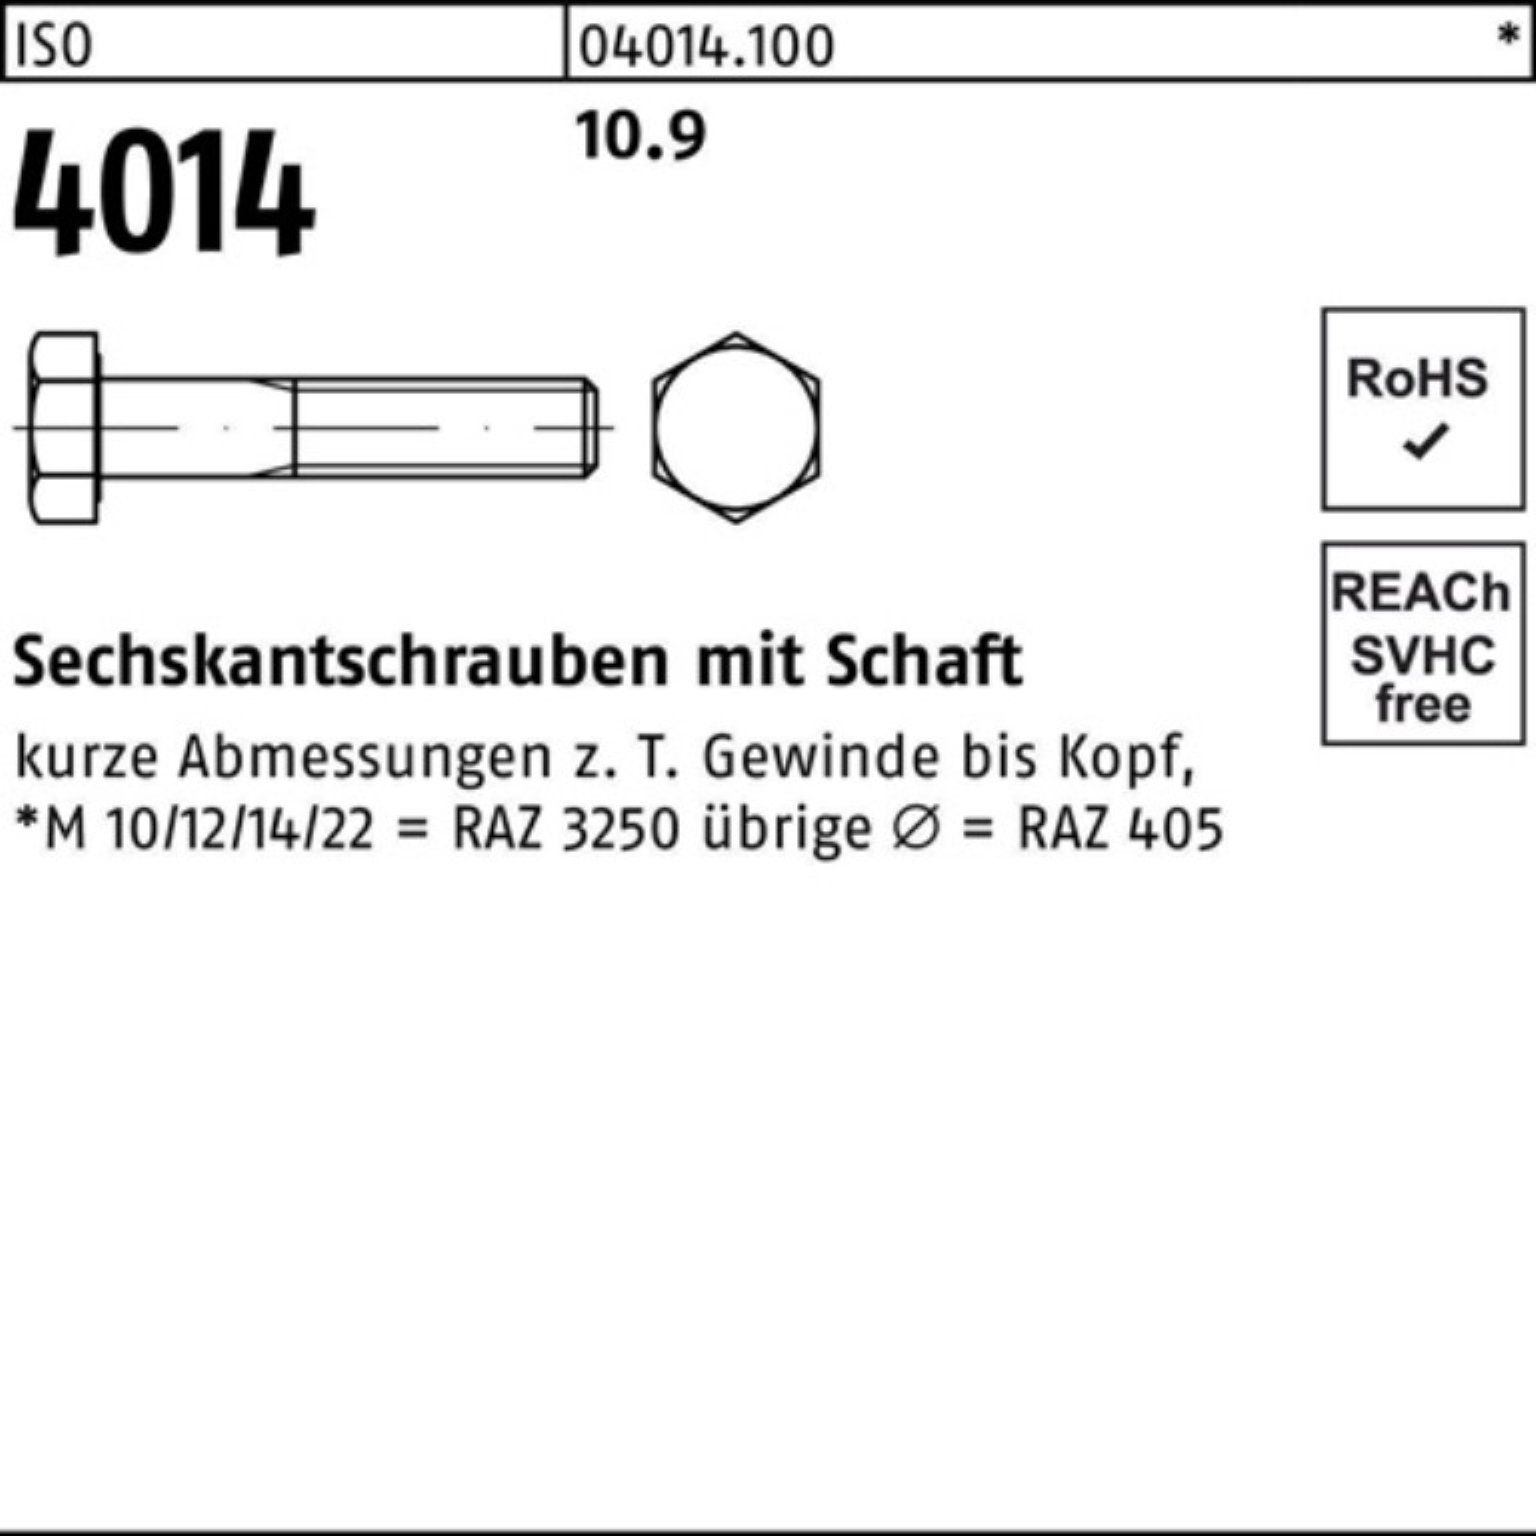 4014 Bufab Sechskantschraube Schaft ISO Pack IS 300 100er 10.9 Stück Sechskantschraube 1 M18x